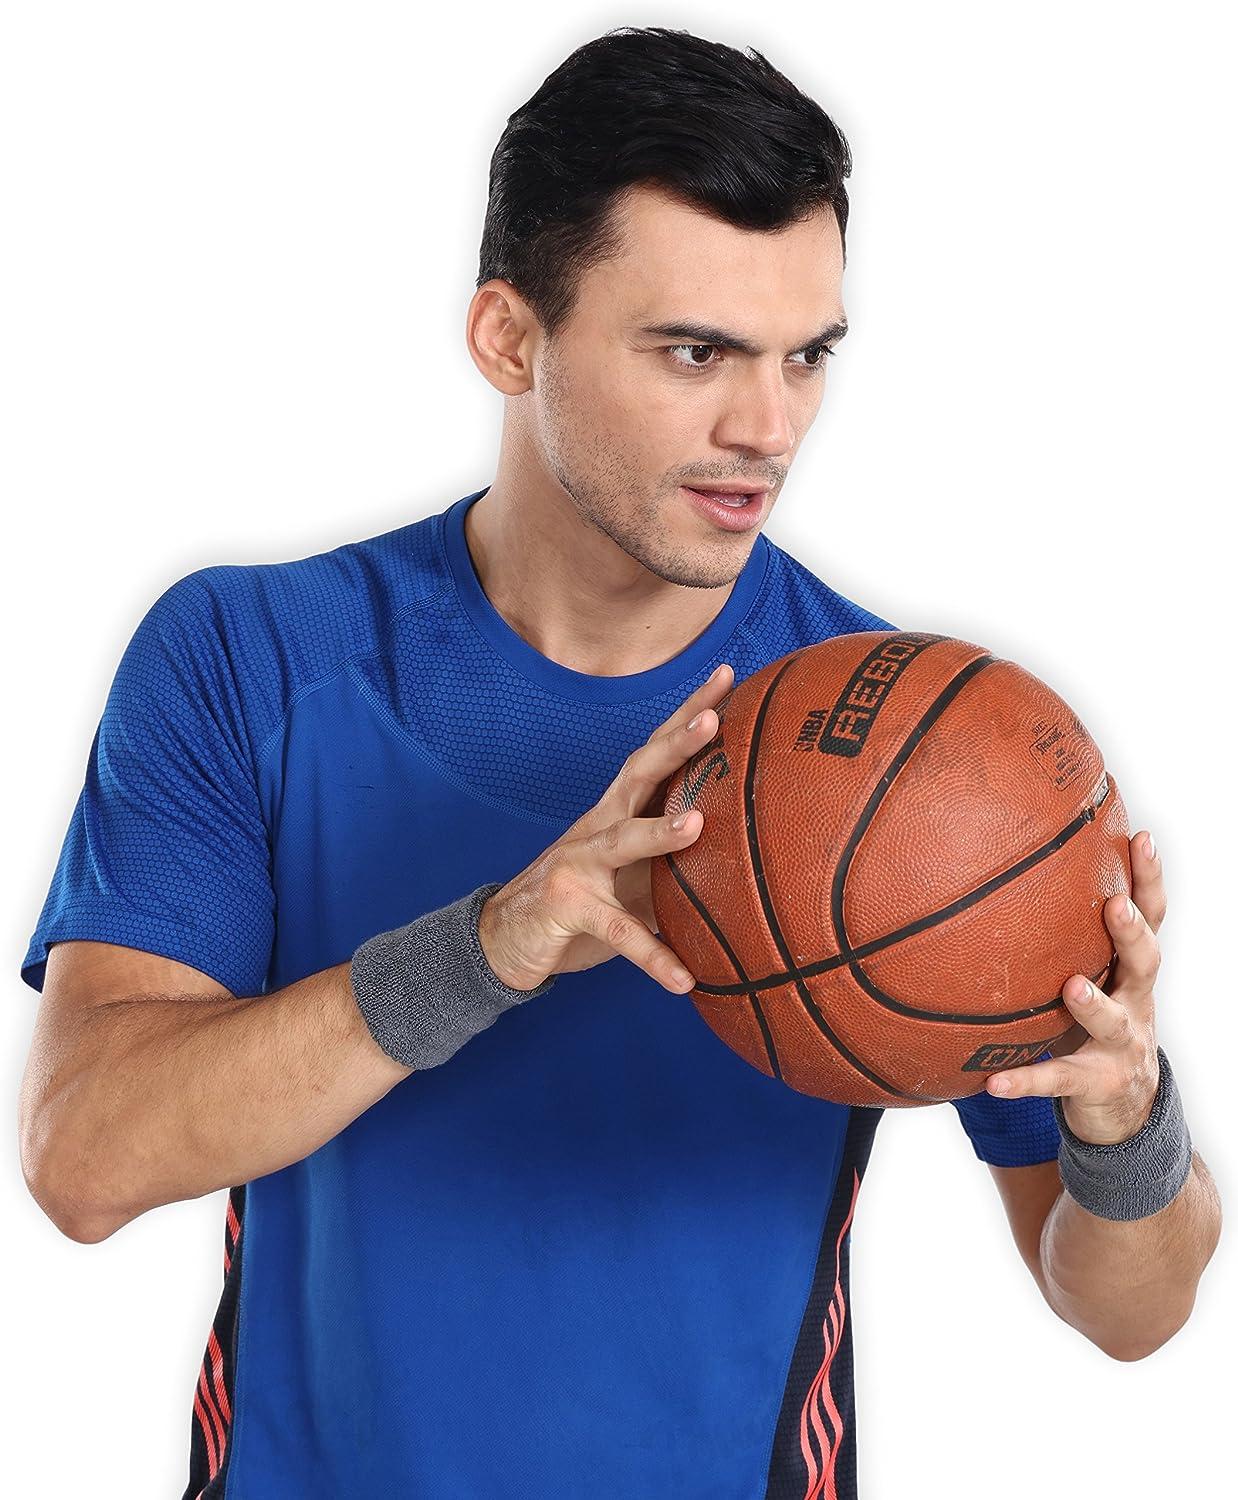 wristband basketball player